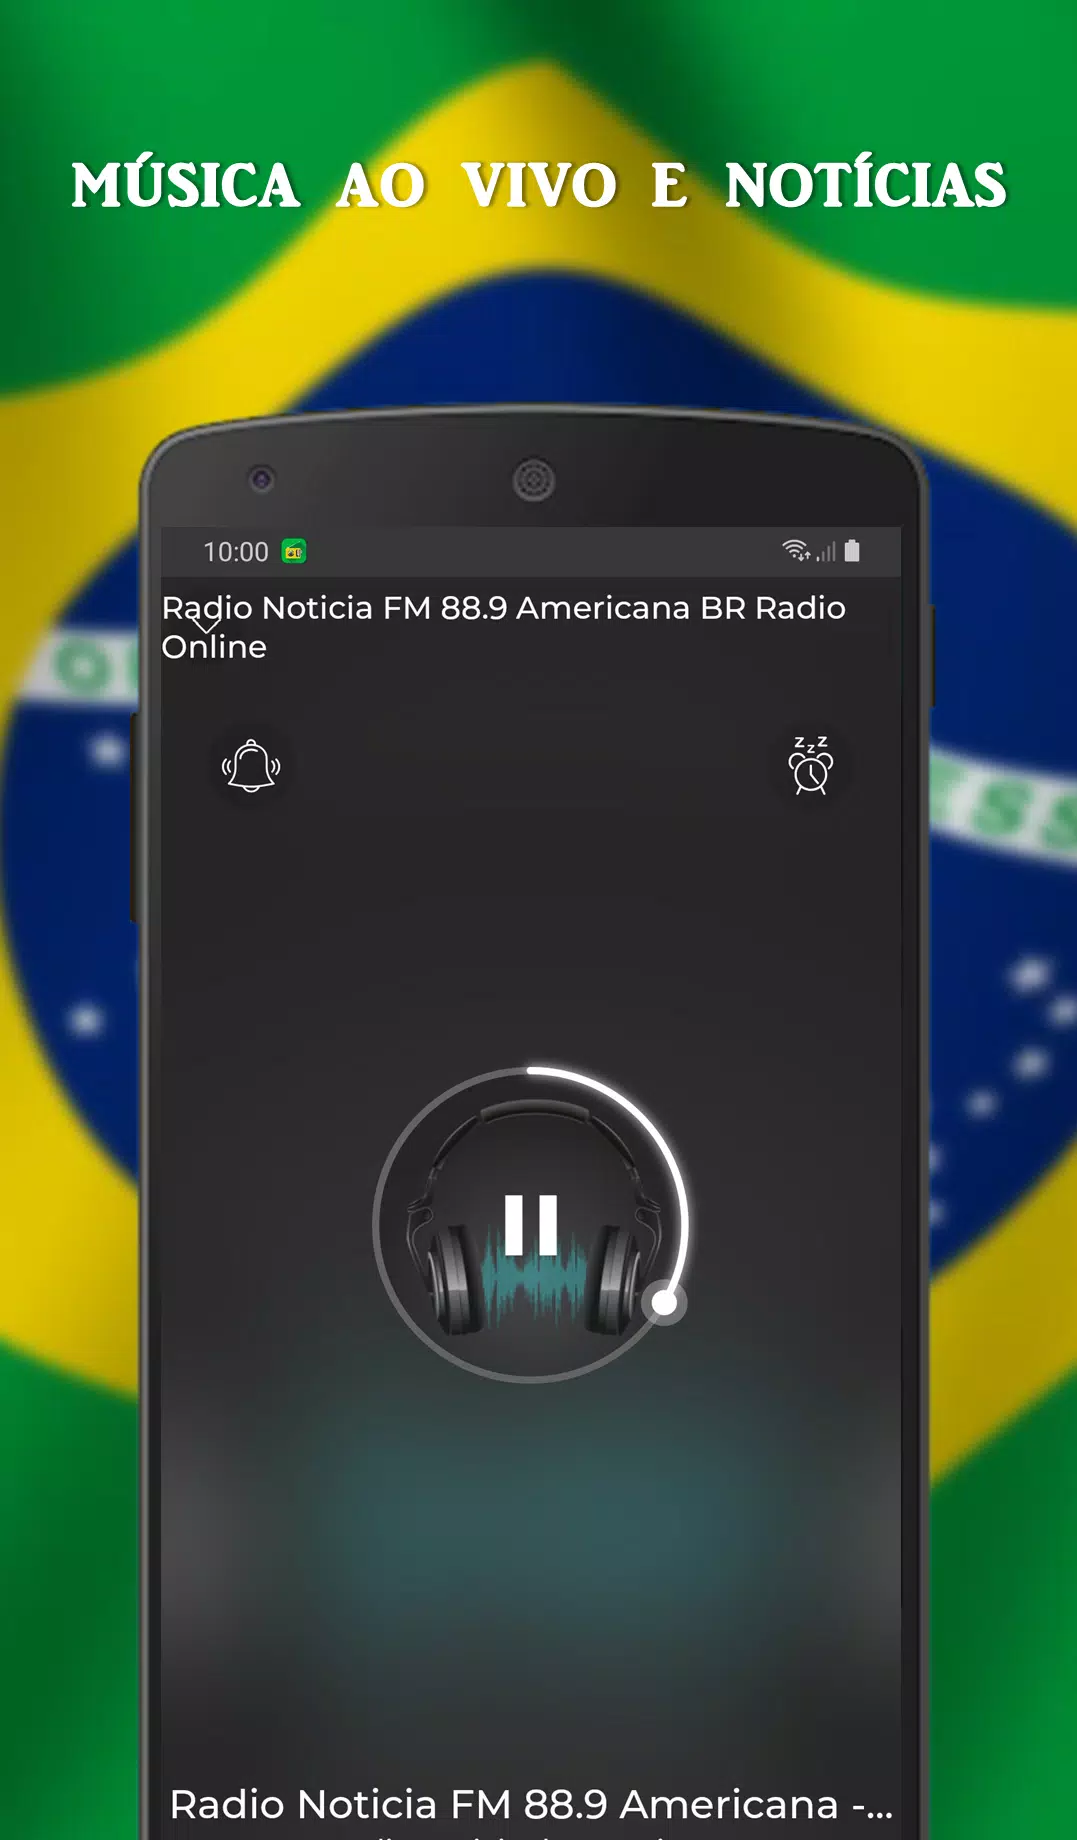 Radio Noticia FM 88.9 Americana - BR Radio Online APK للاندرويد تنزيل